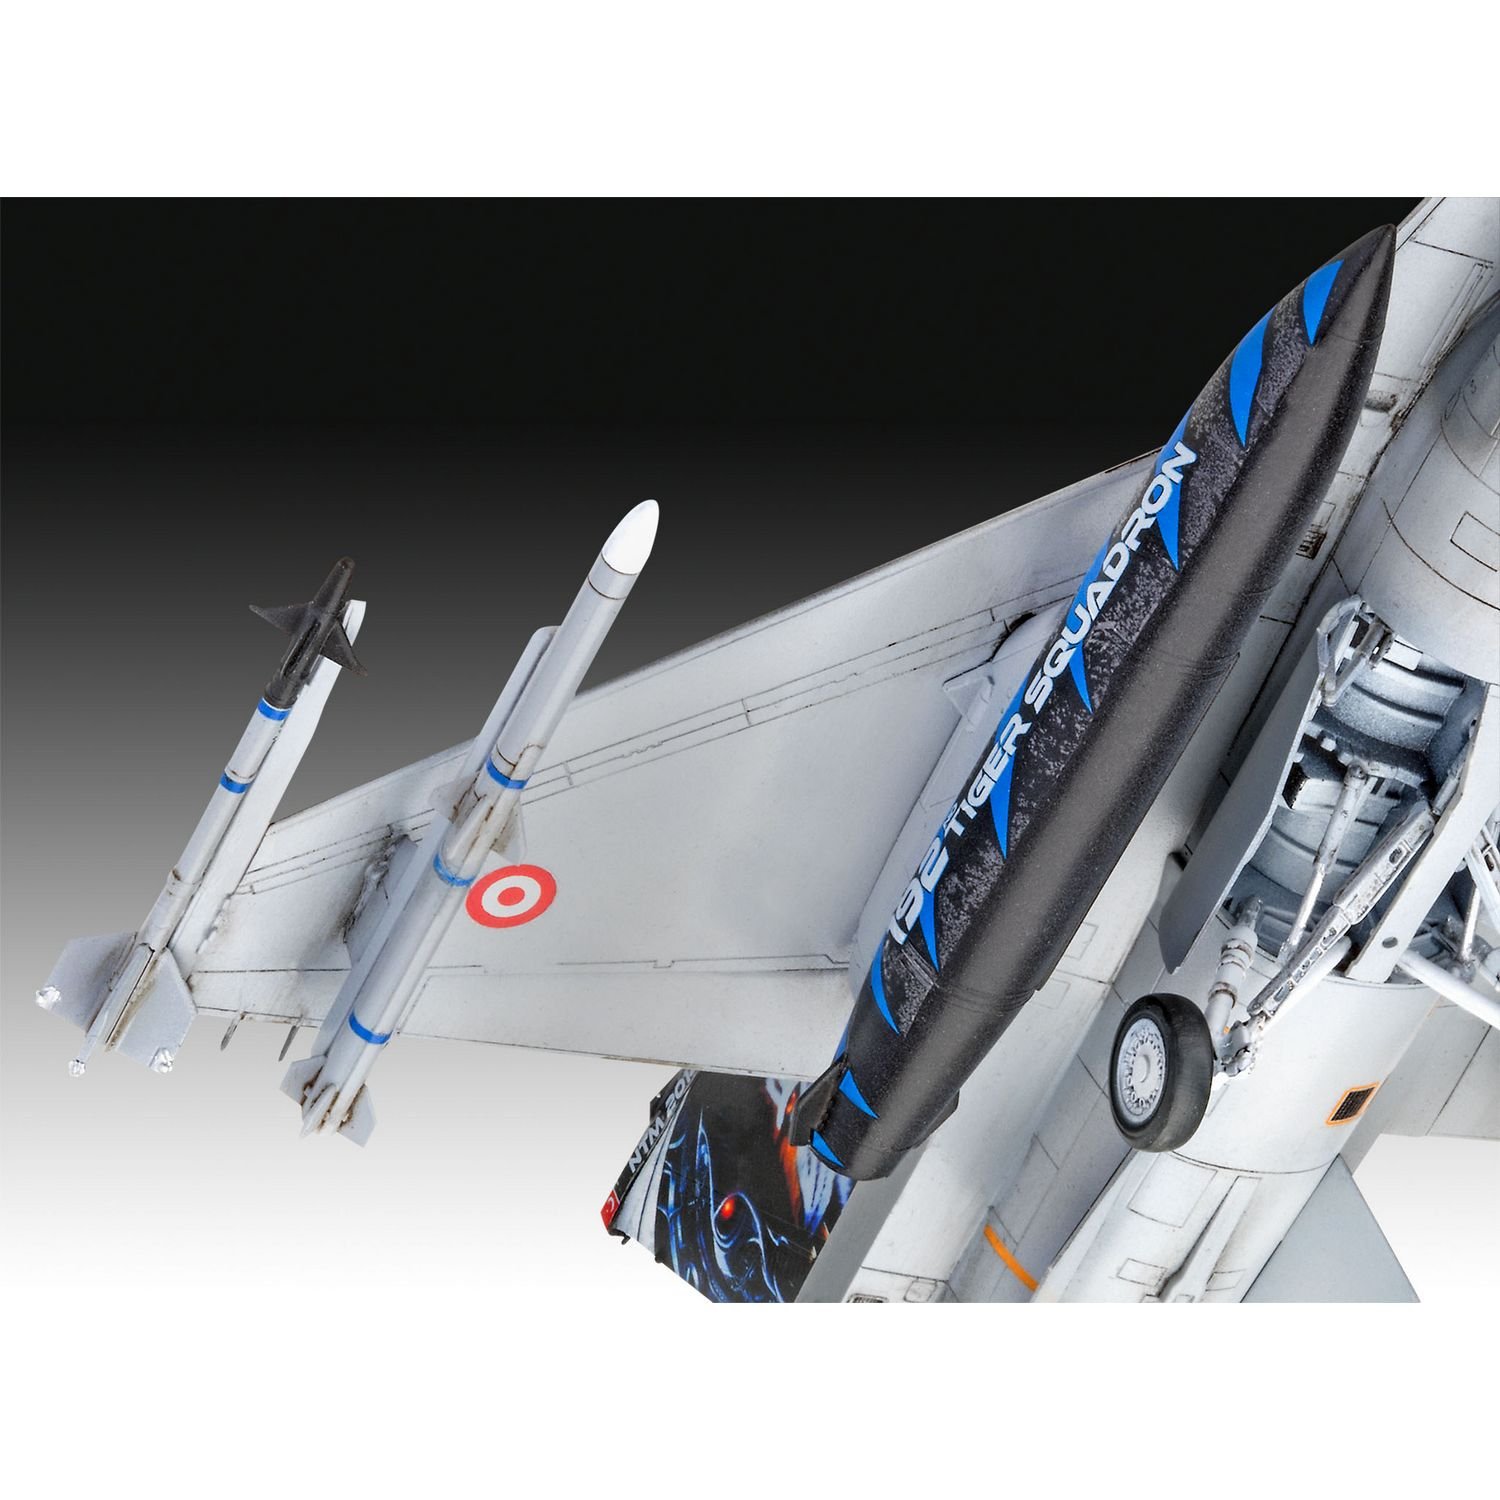 Сборная модель Revell Самолет F-16D Tigermeet 2014, уровень 4, масштаб 1:72, 130 деталей (RVL-03844) - фото 7